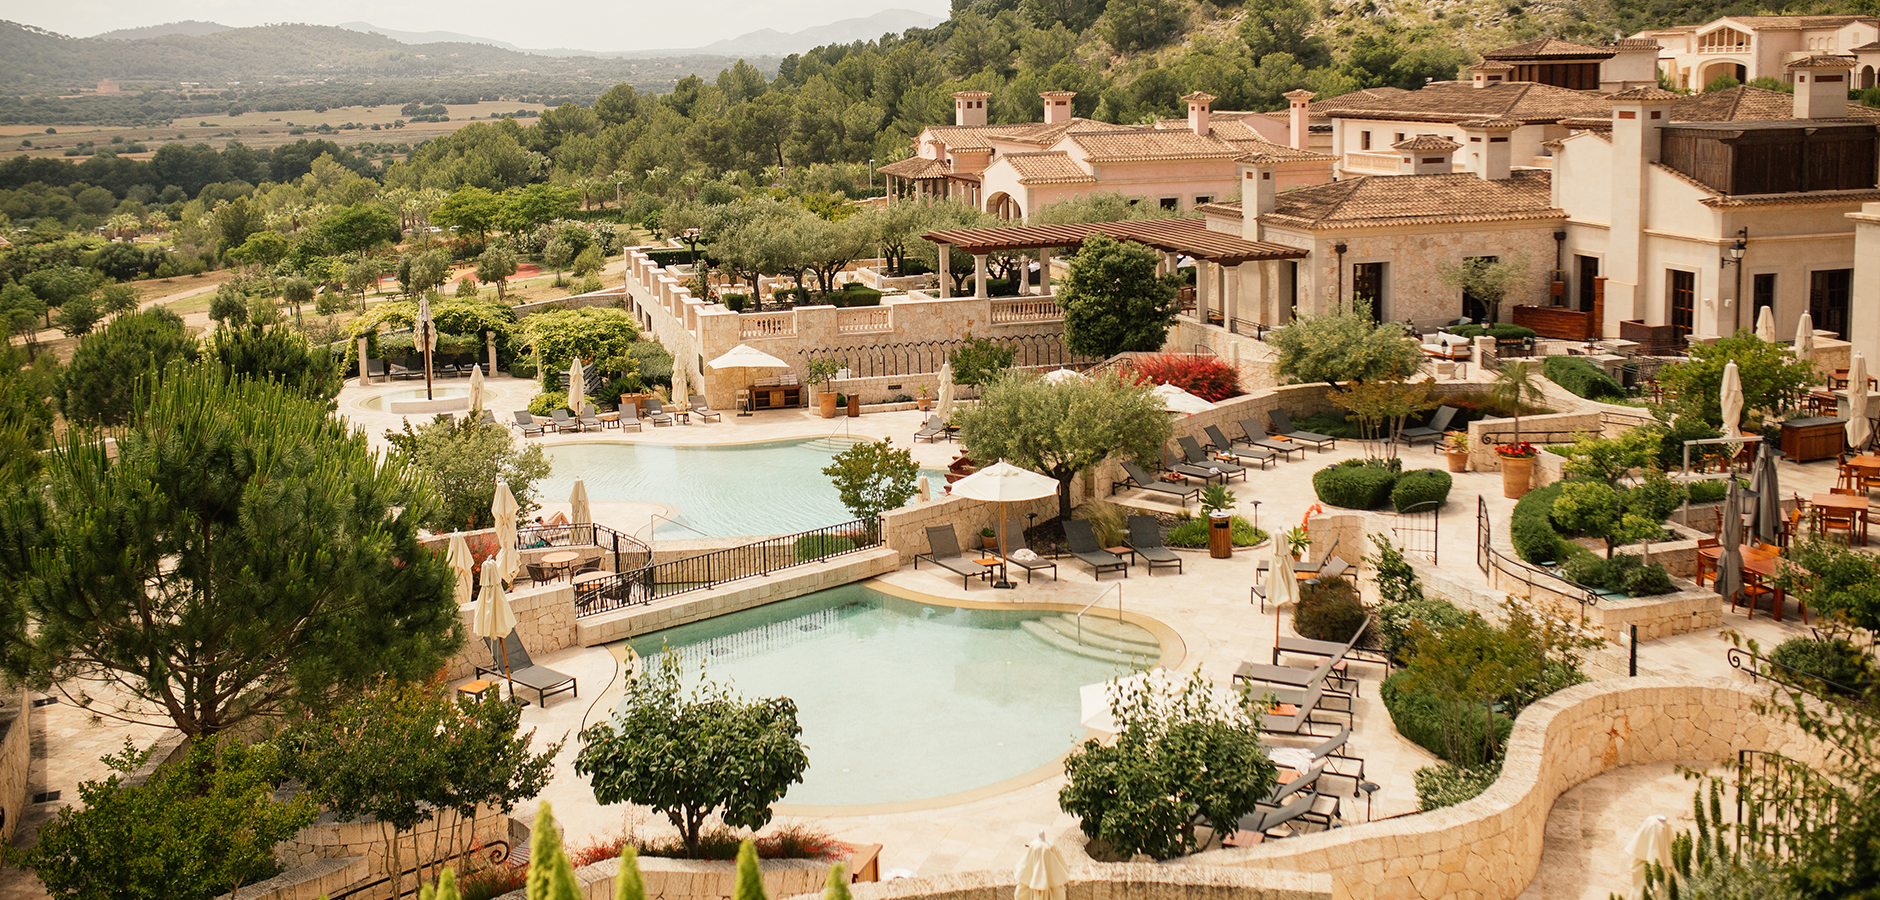 Vista del Hotel Cap Vermell en la sierra de Mallorca, escenario del enlace de Stephanie y Mau.